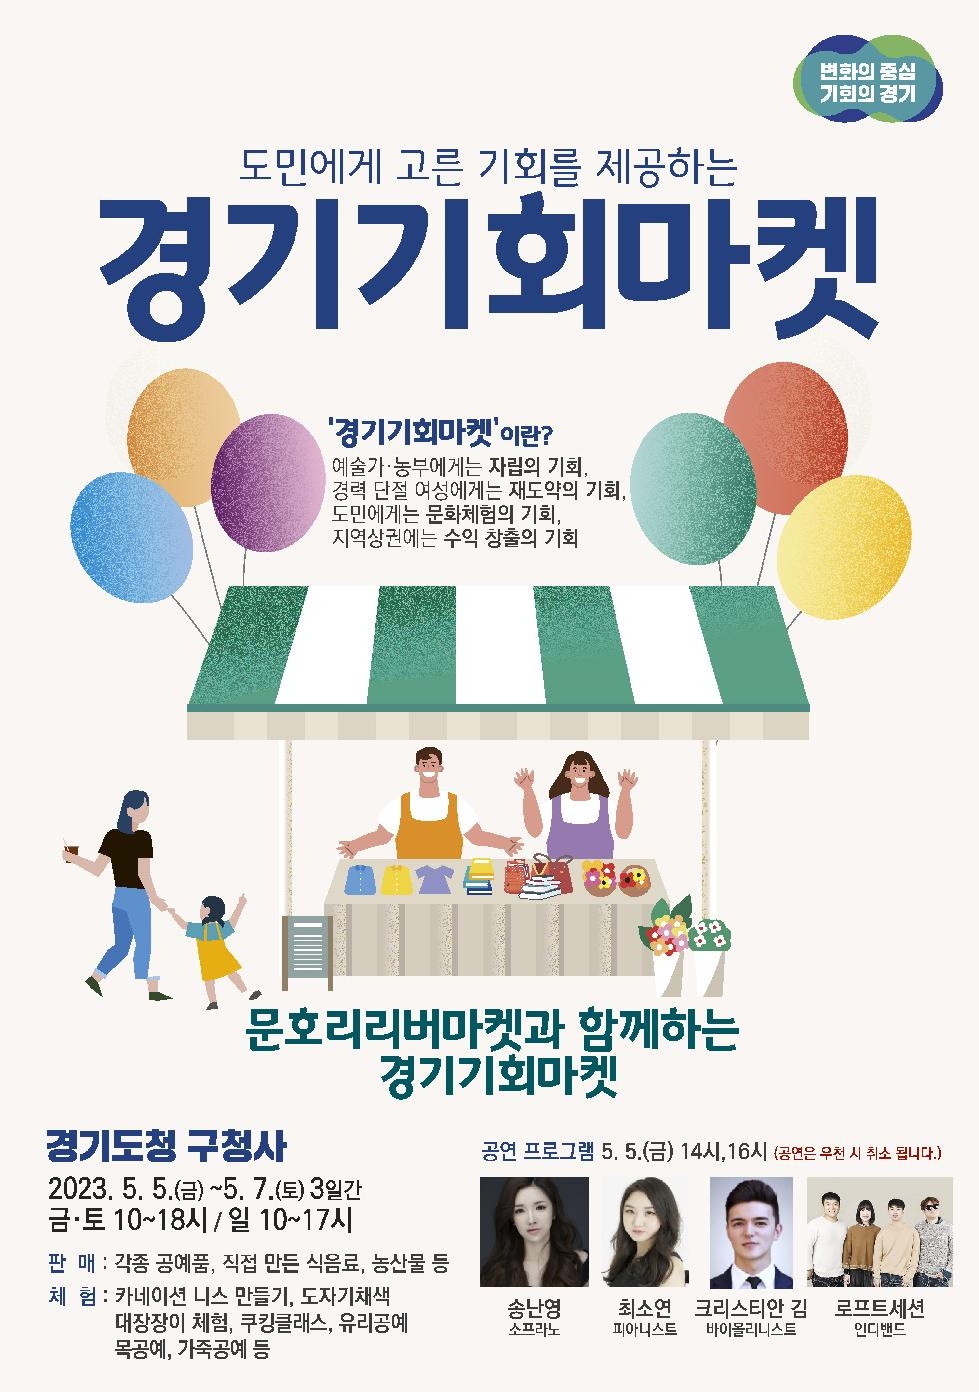 경기도,어린이날 연휴 문호리리버마켓과 함께하는 두 번째 ‘경기기회마켓’ 